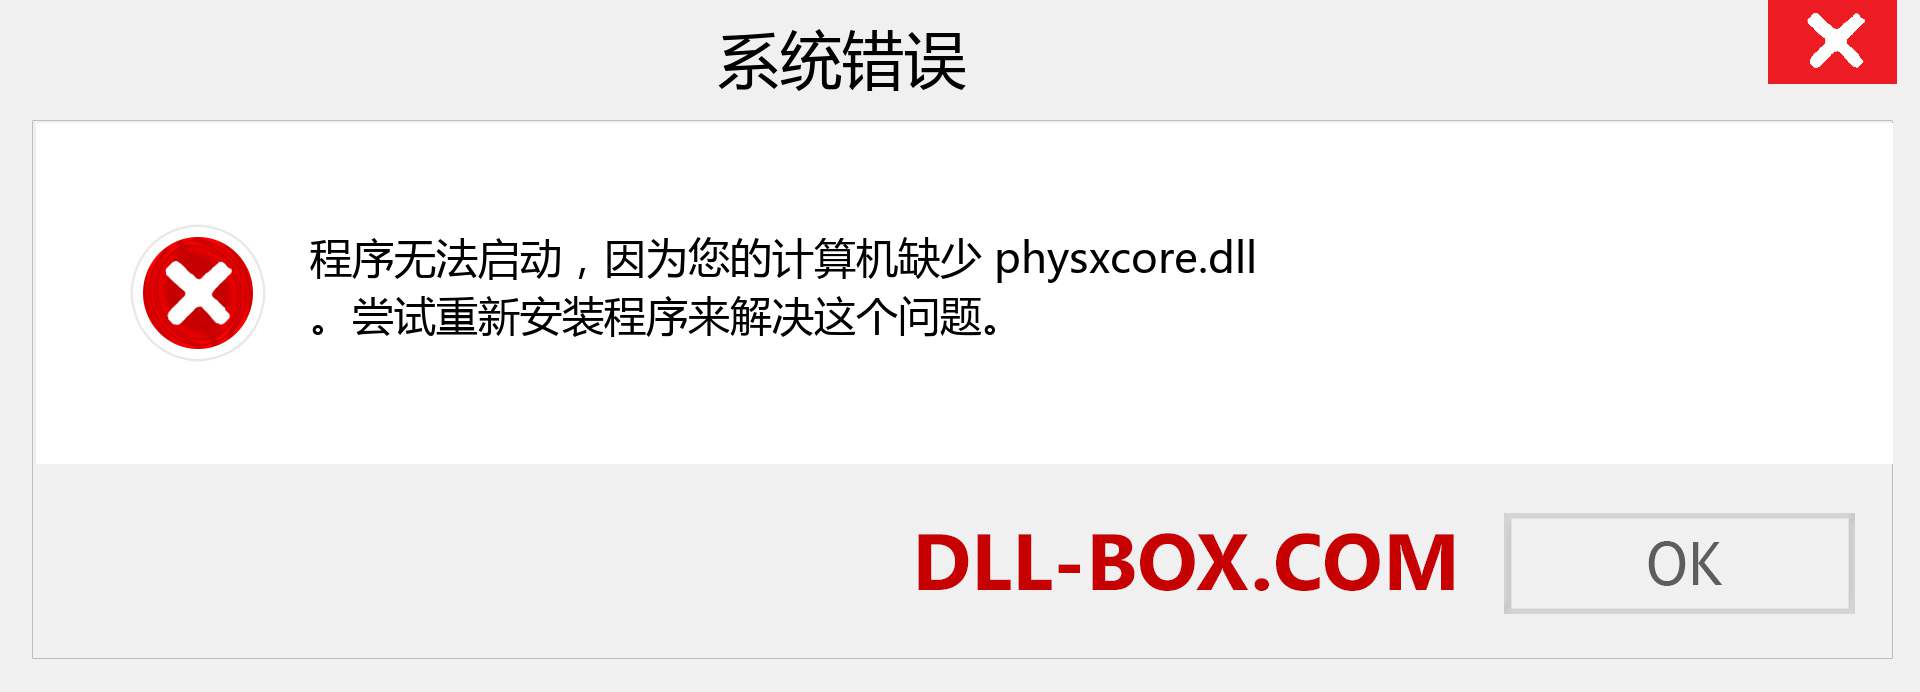 physxcore.dll 文件丢失？。 适用于 Windows 7、8、10 的下载 - 修复 Windows、照片、图像上的 physxcore dll 丢失错误